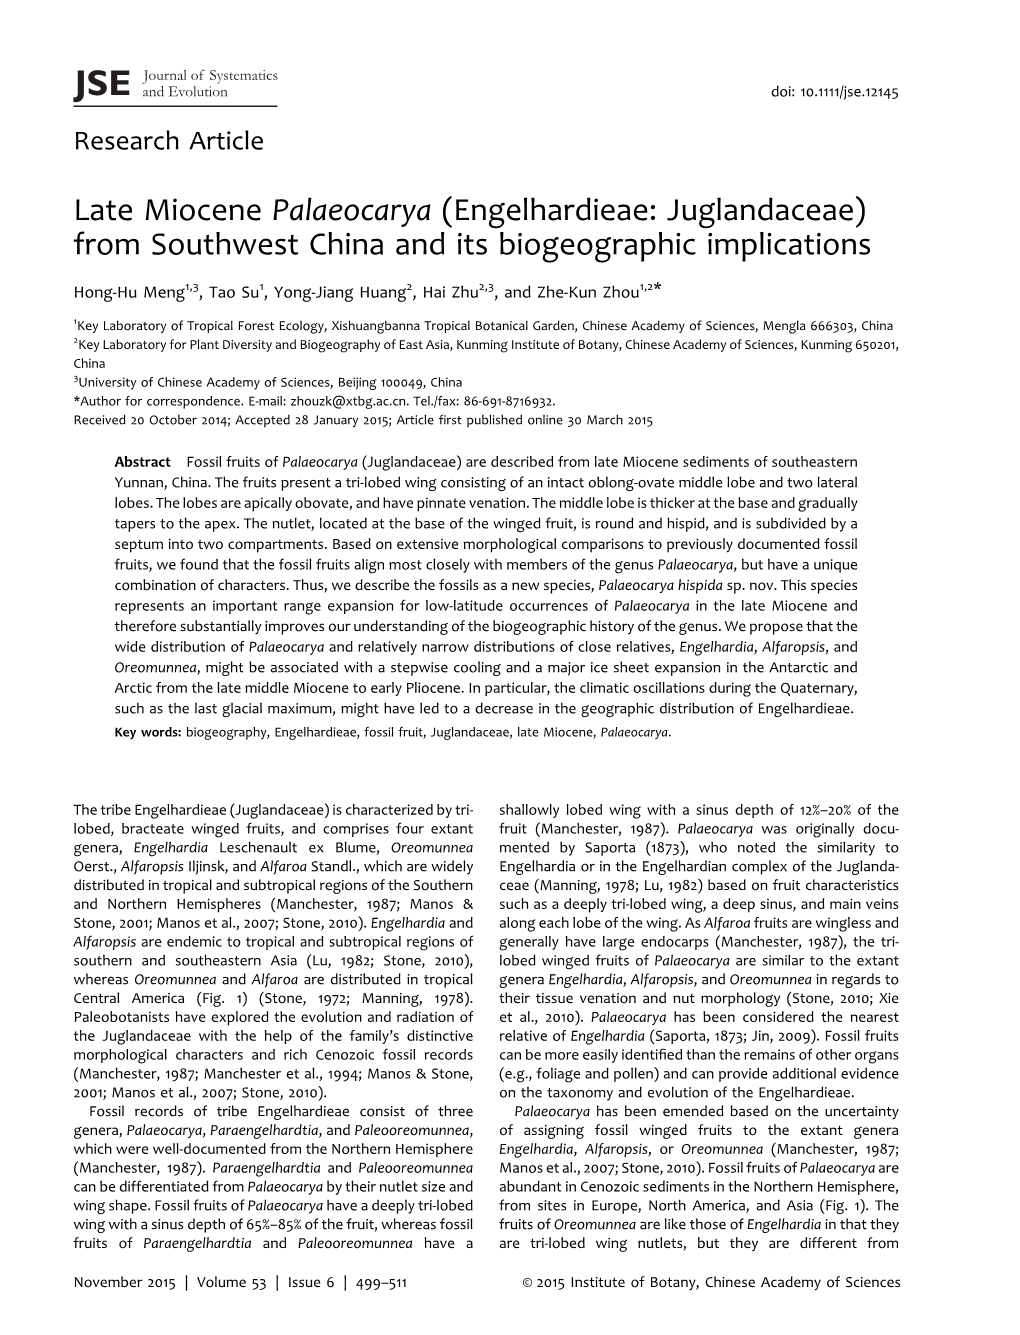 Late Miocene Palaeocarya (Engelhardieae: Juglandaceae) from Southwest China and Its Biogeographic Implications